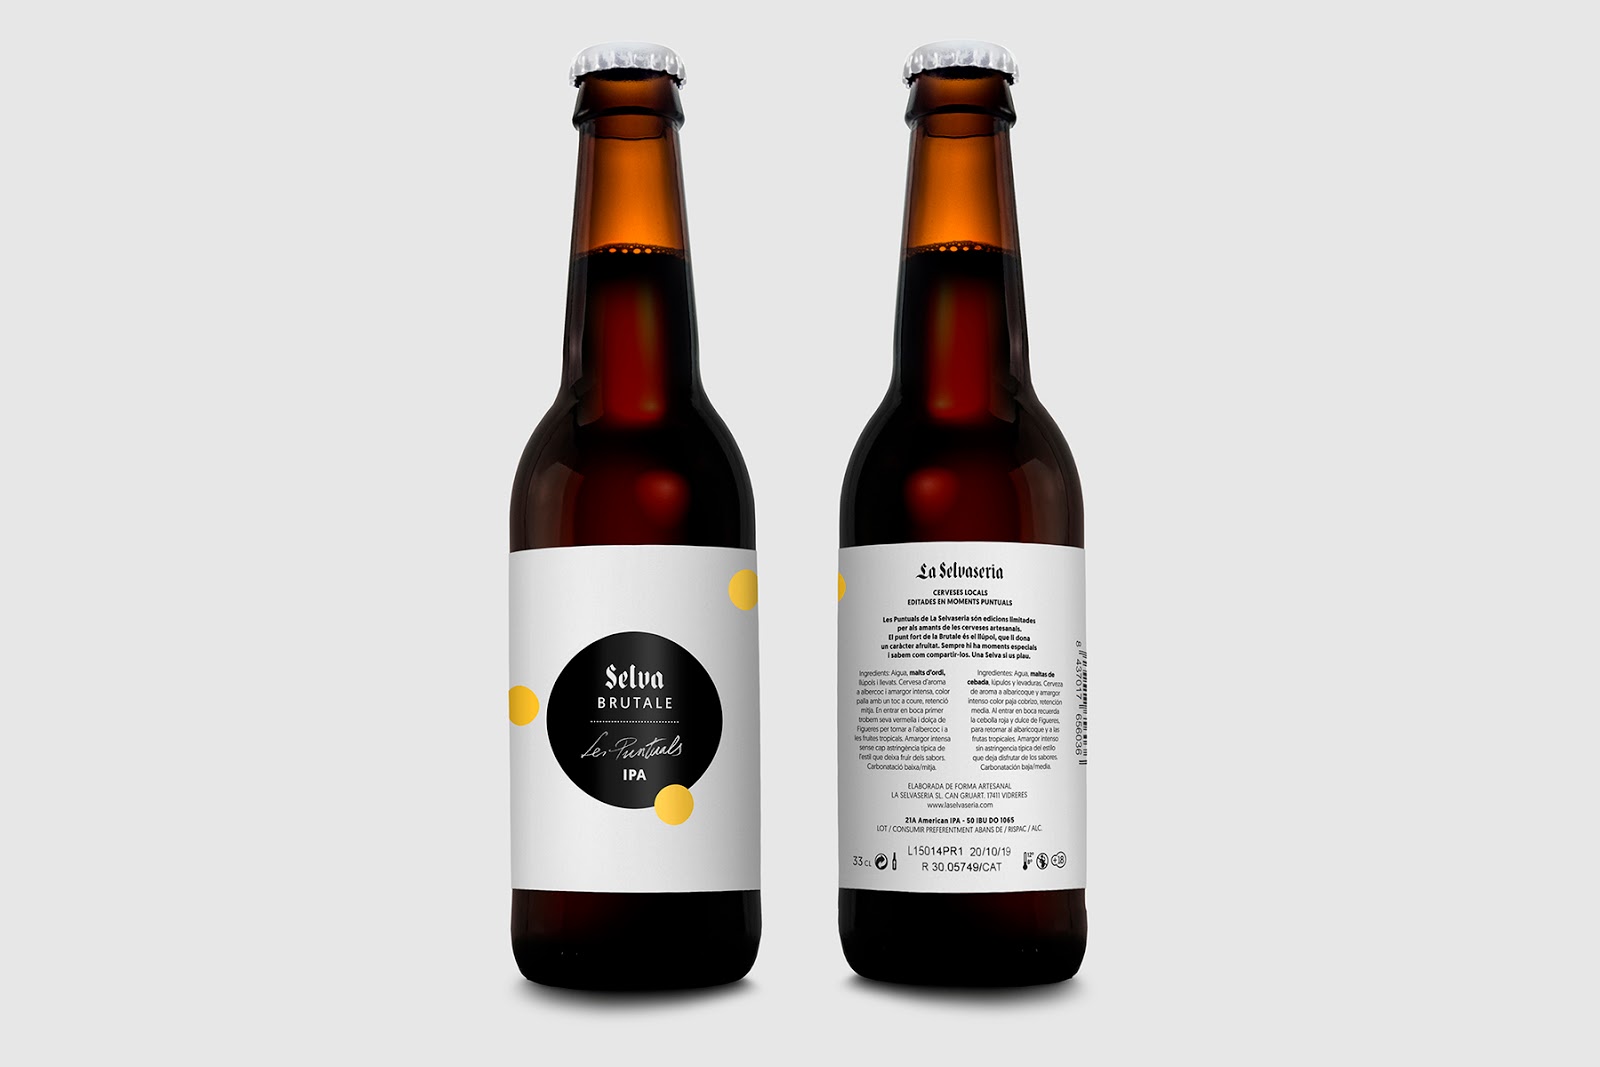 啤酒饮料西安oe欧亿体育app官方下载
品牌策划包装设计VI设计logo设计